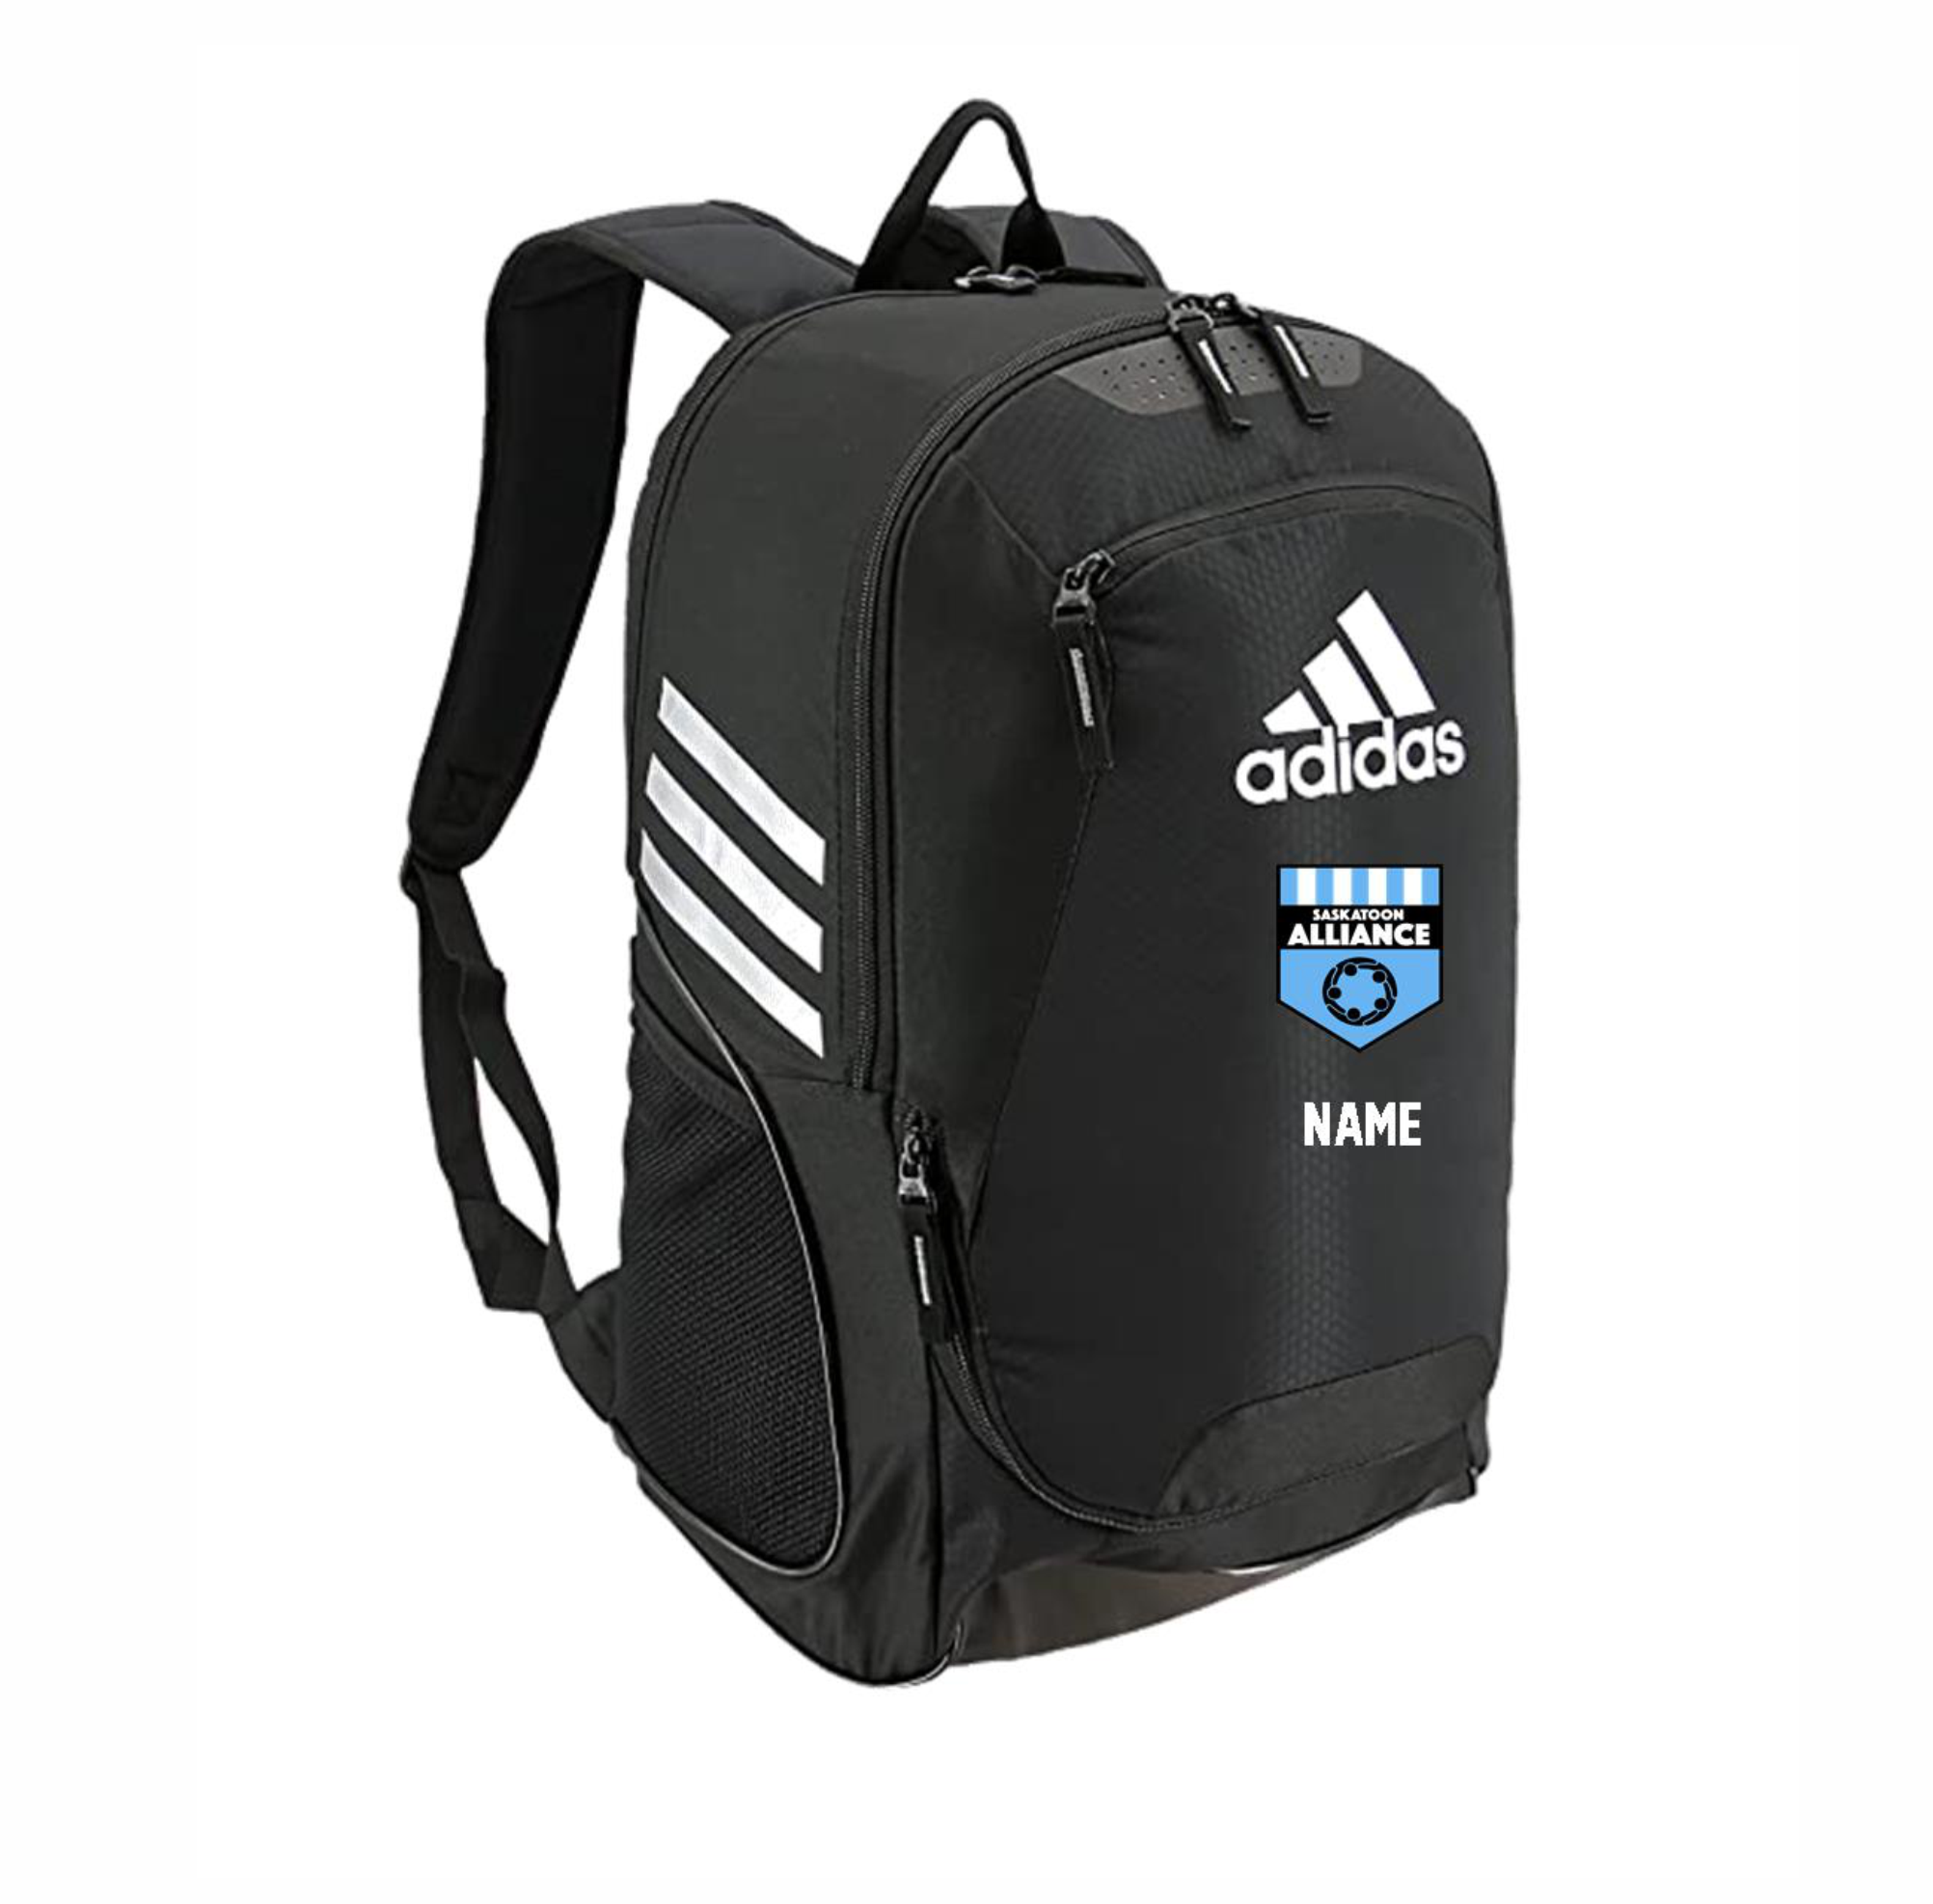 Adidas Stadium II Backpack (Alliance)